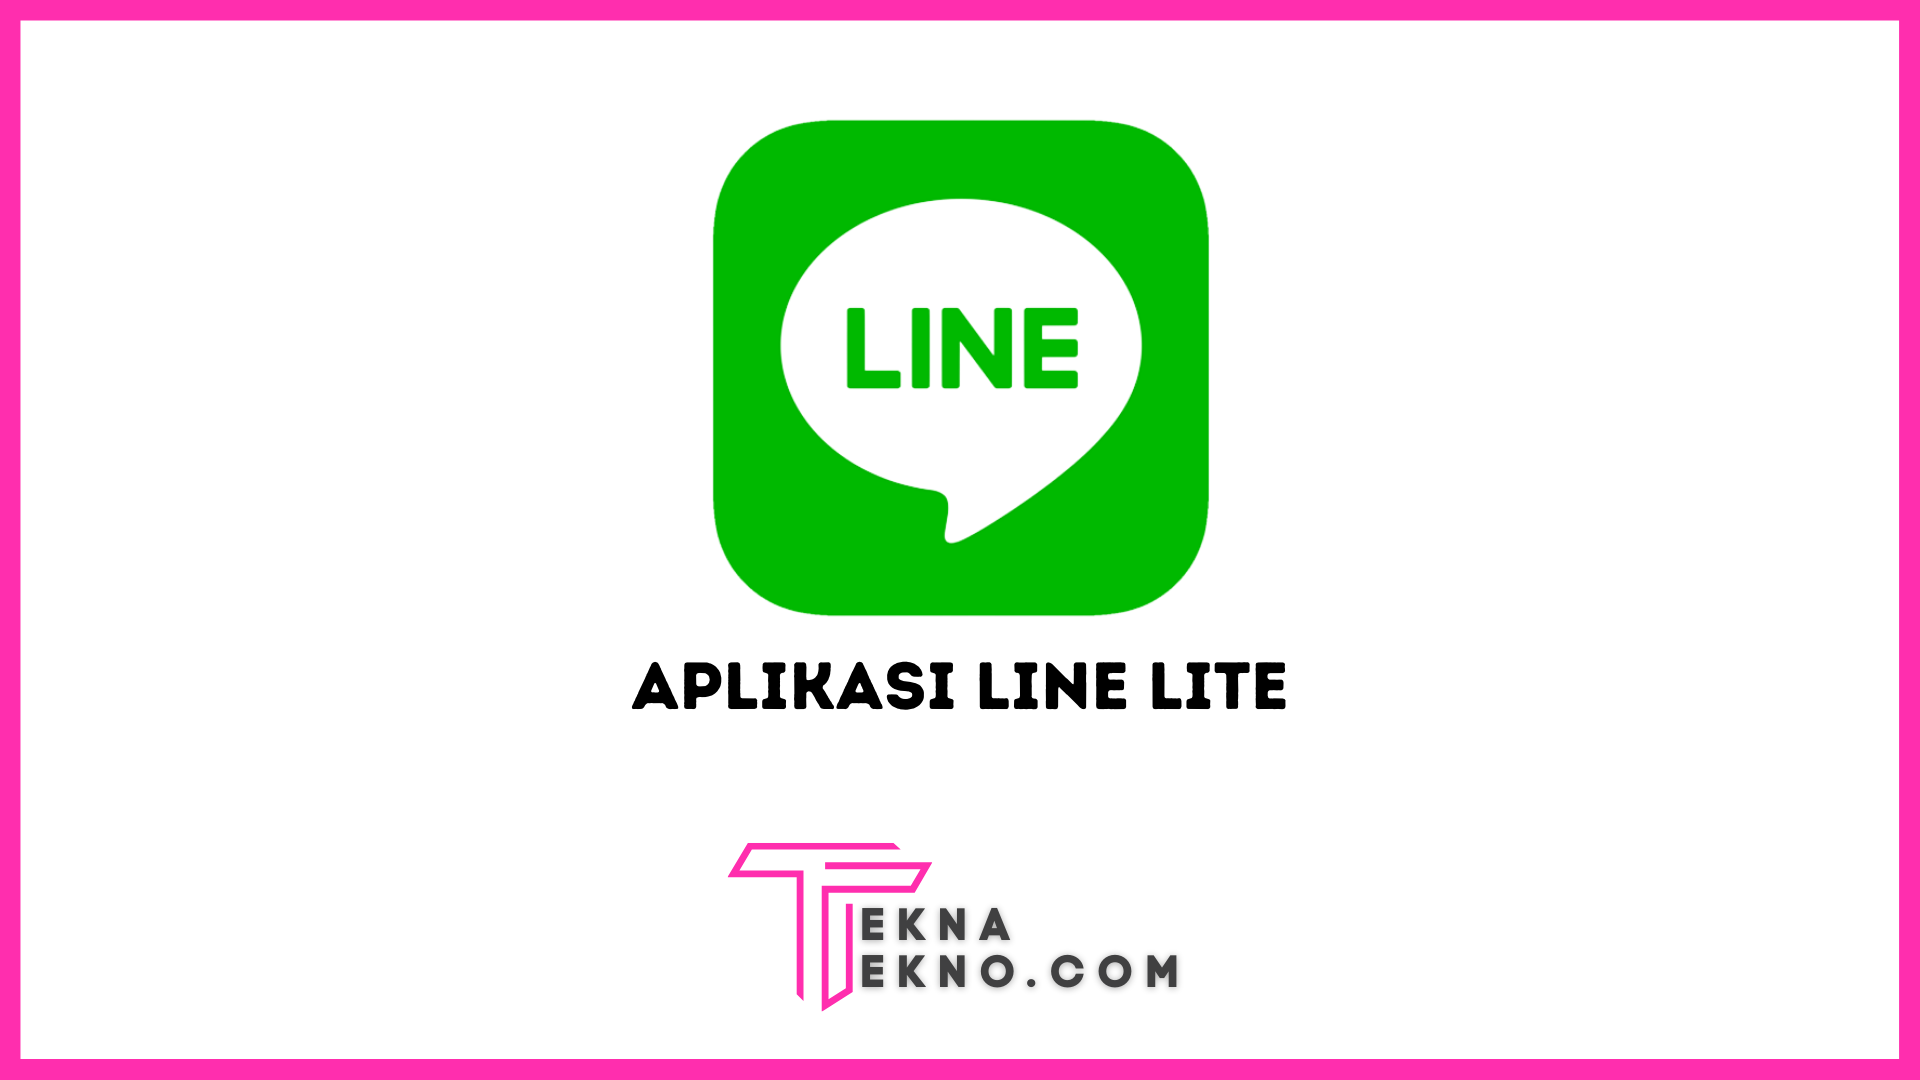 Aplikasi LINE Lite: Kelebihan dan Kekurangan Serta Bedanya dengan LINE Reguler